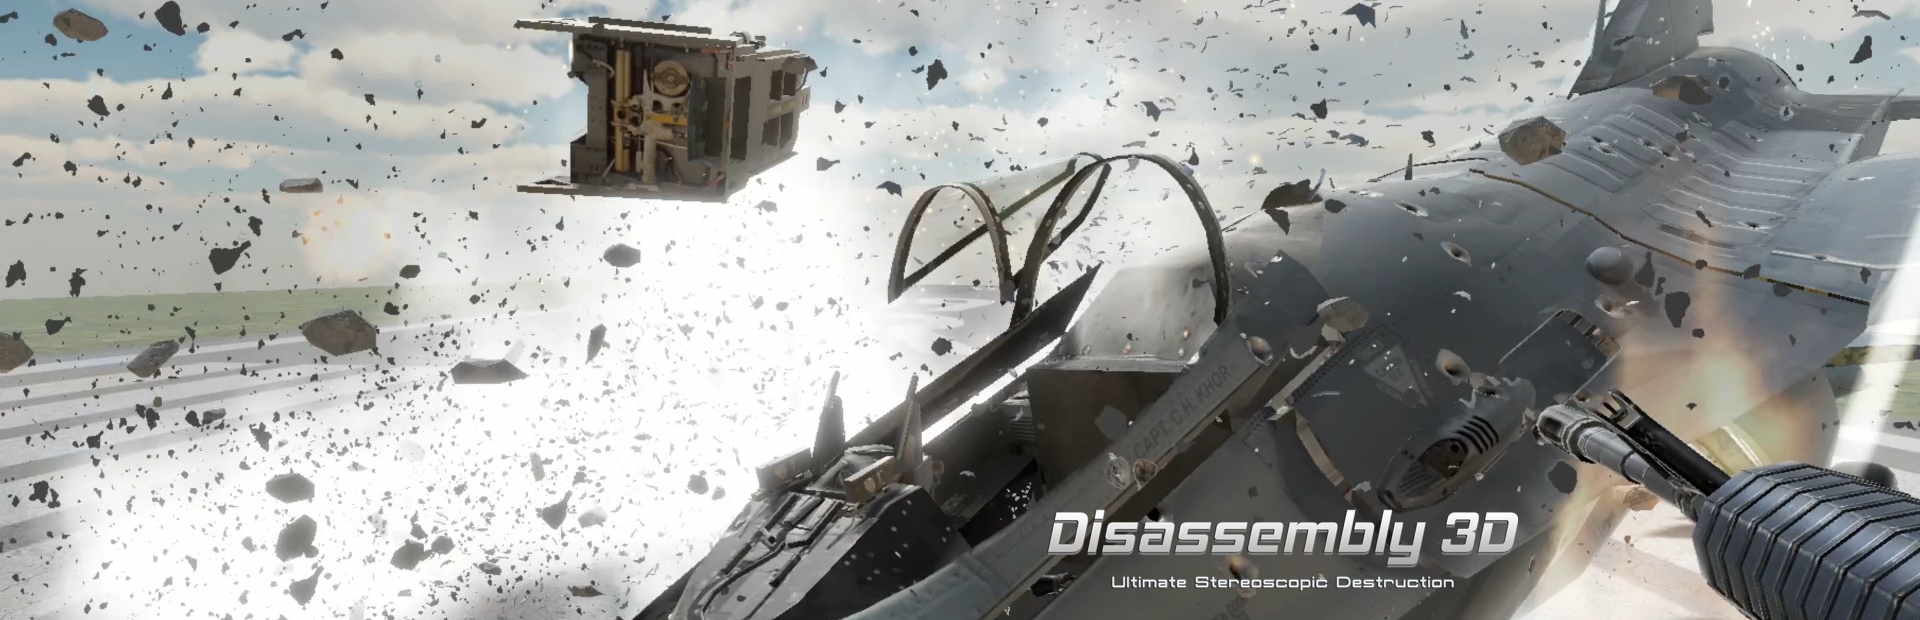 دانلود بازی Disassembly 3D برای PC | گیمباتو